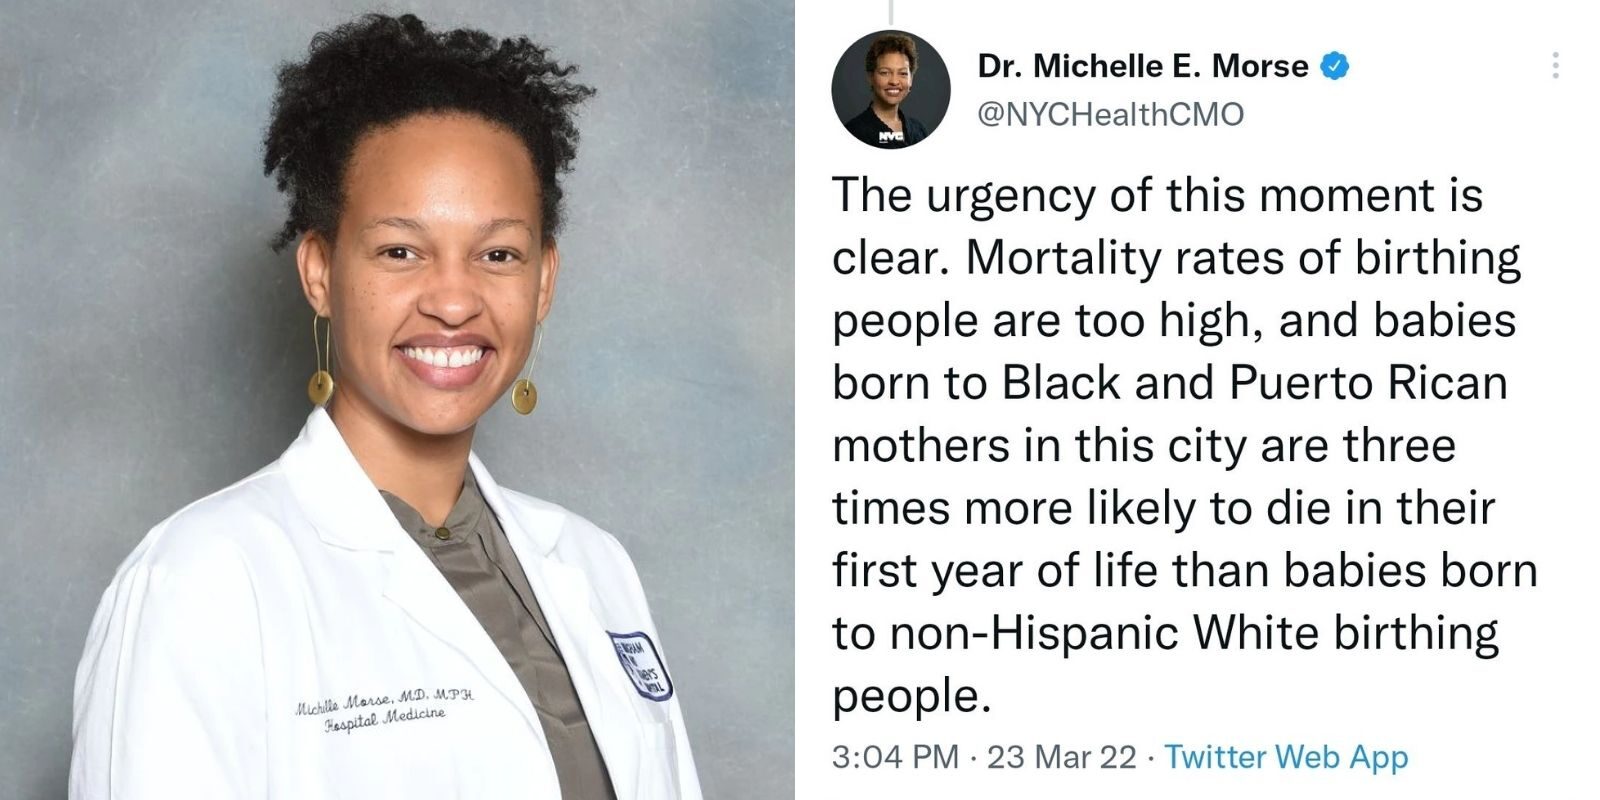 Dr. Michelle E. Morse tweet